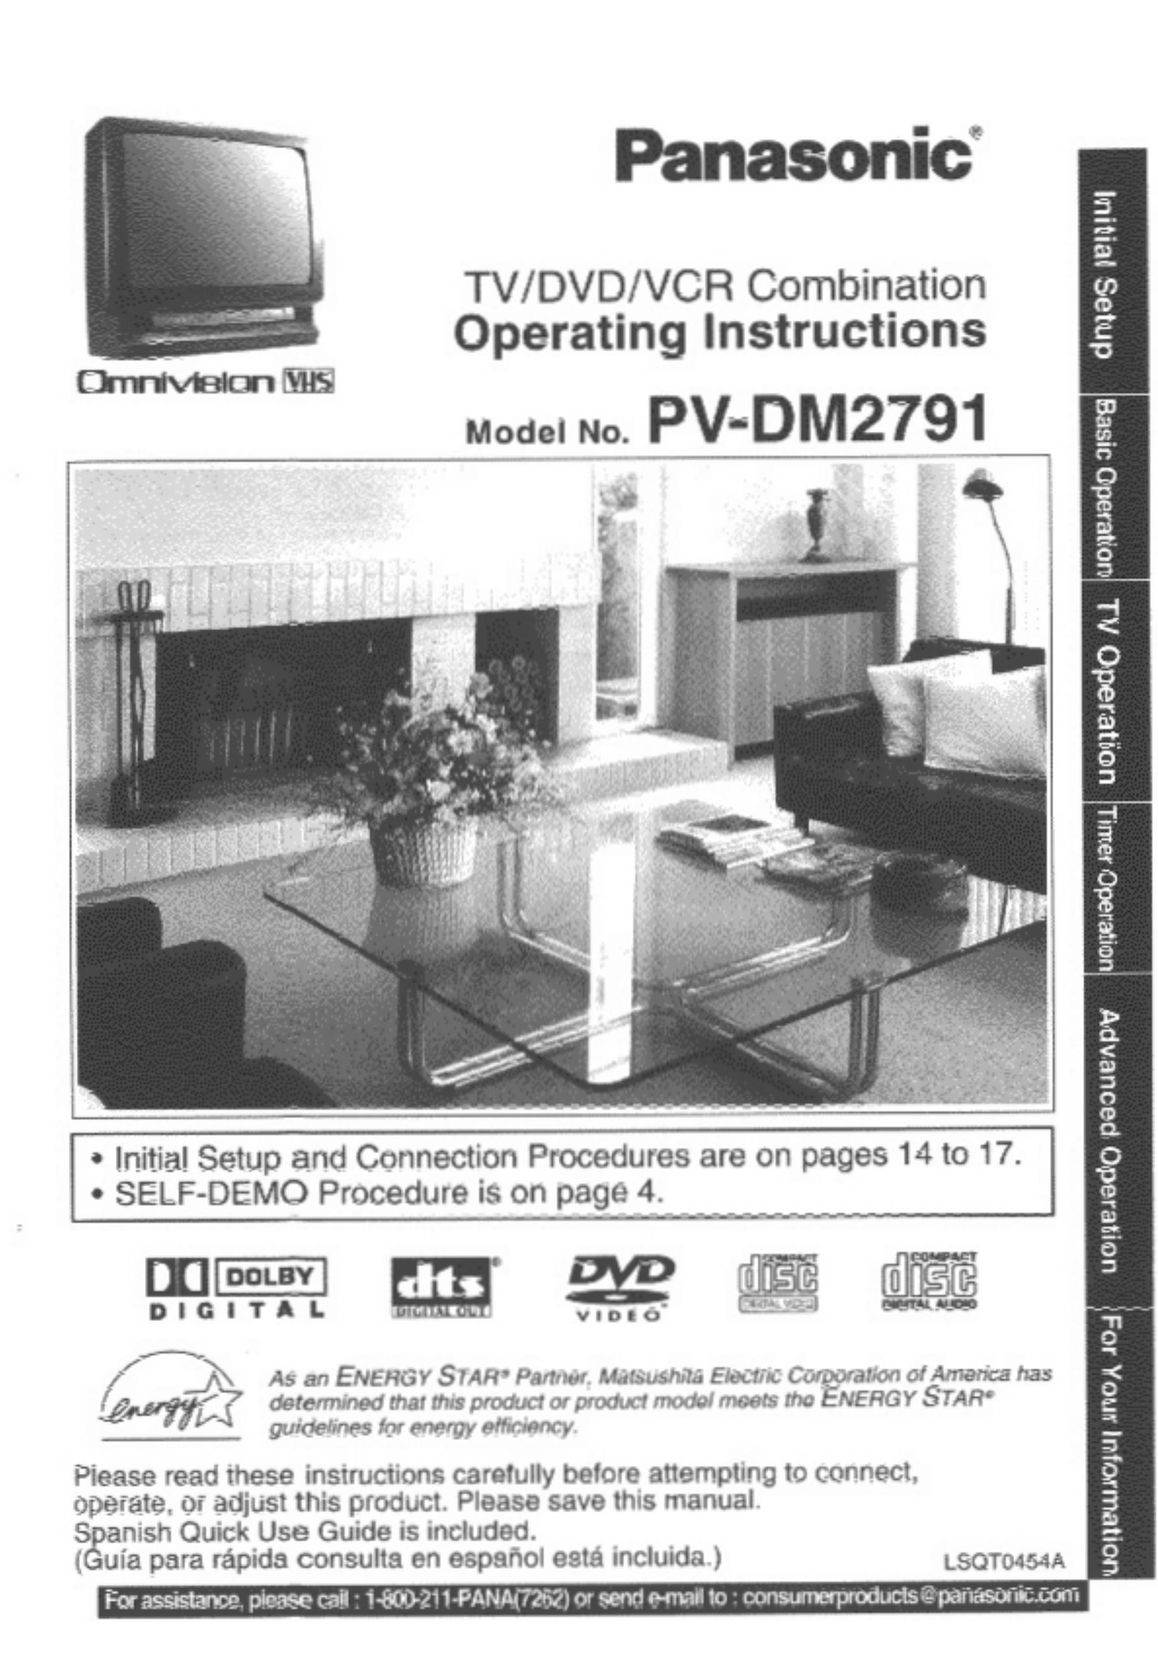 Panasonic PV-DM2791 DVD VCR Combo User Manual